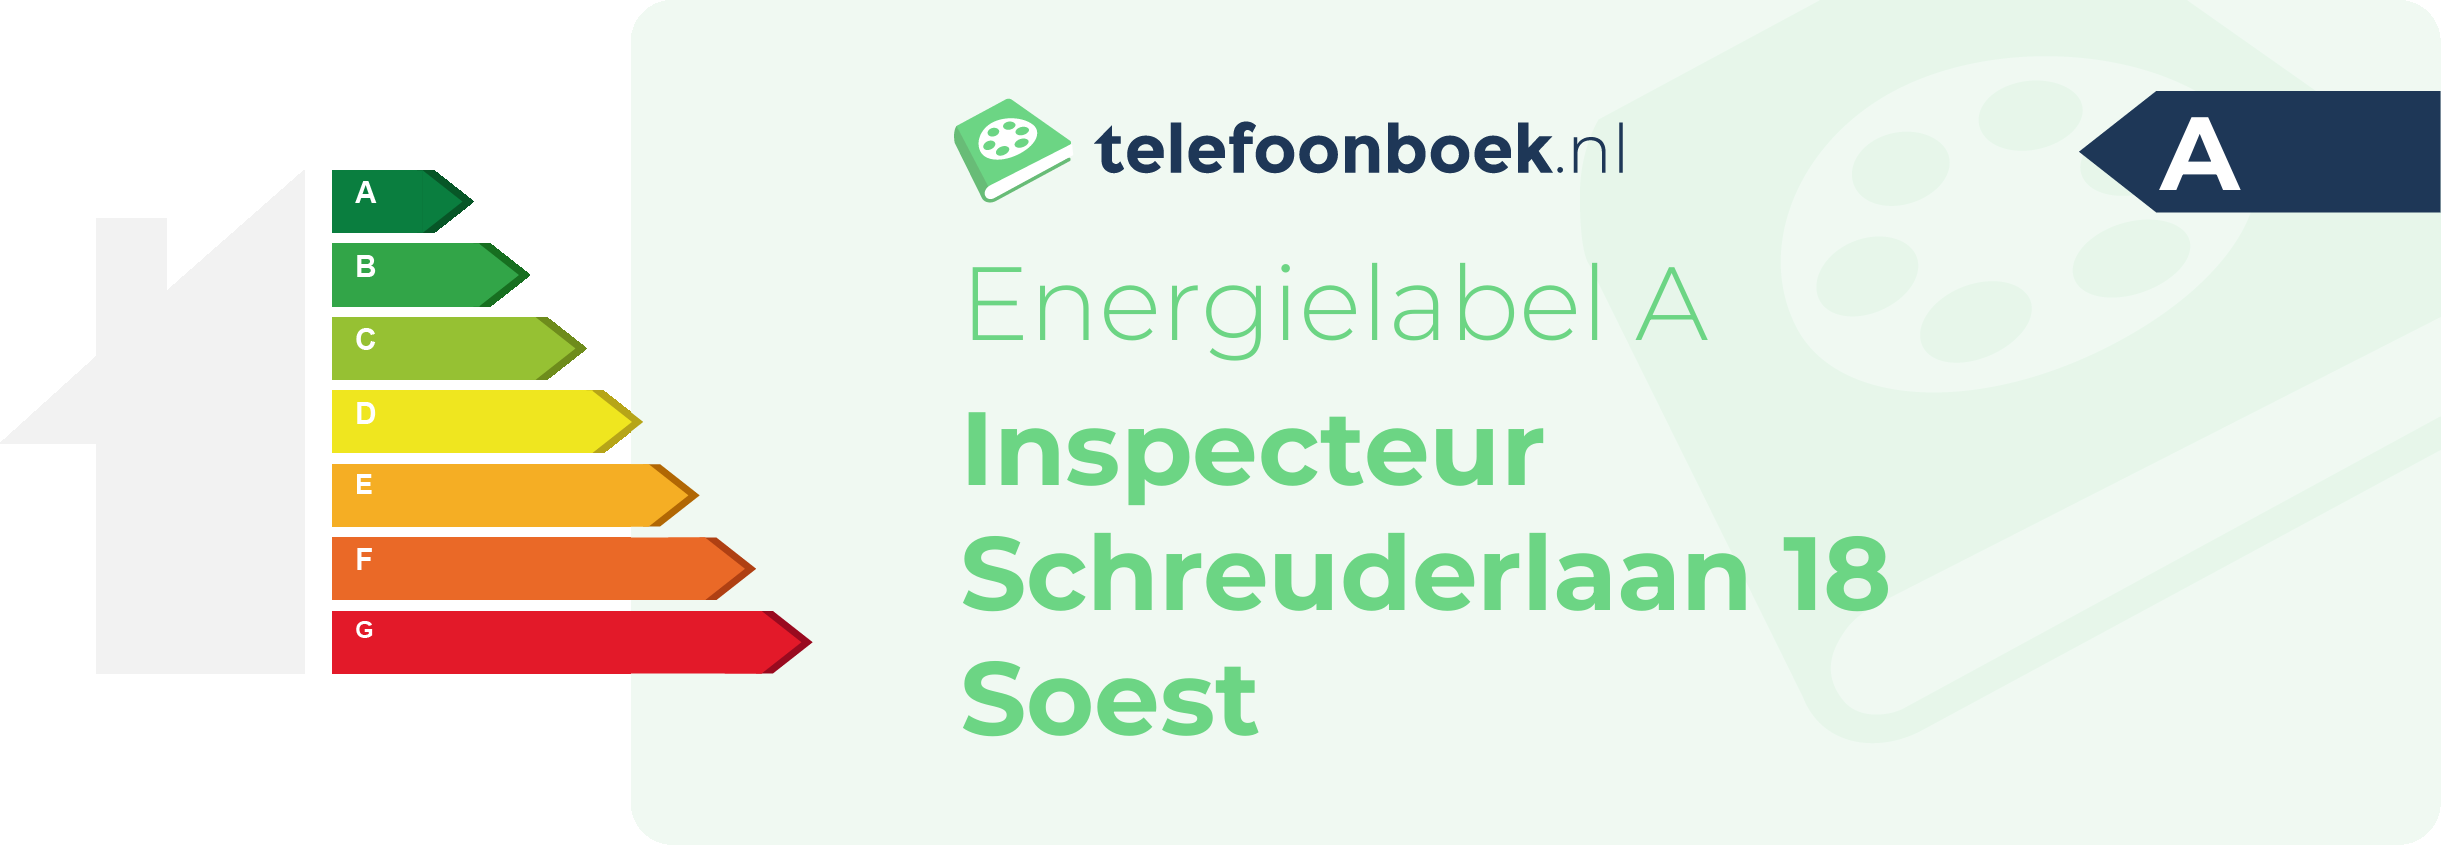 Energielabel Inspecteur Schreuderlaan 18 Soest